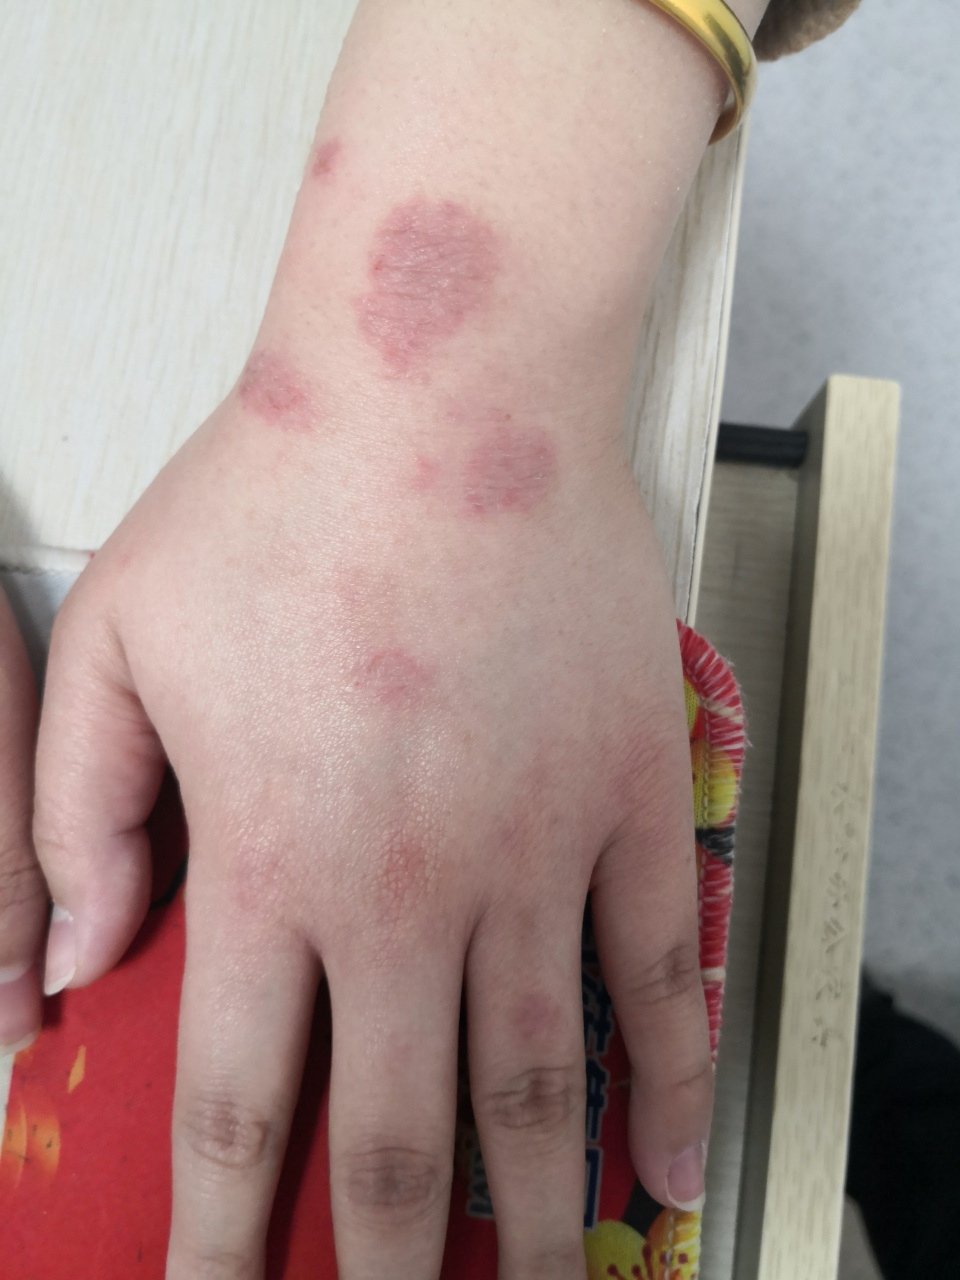 手背红斑斑块症状,是接触性皮炎症状!